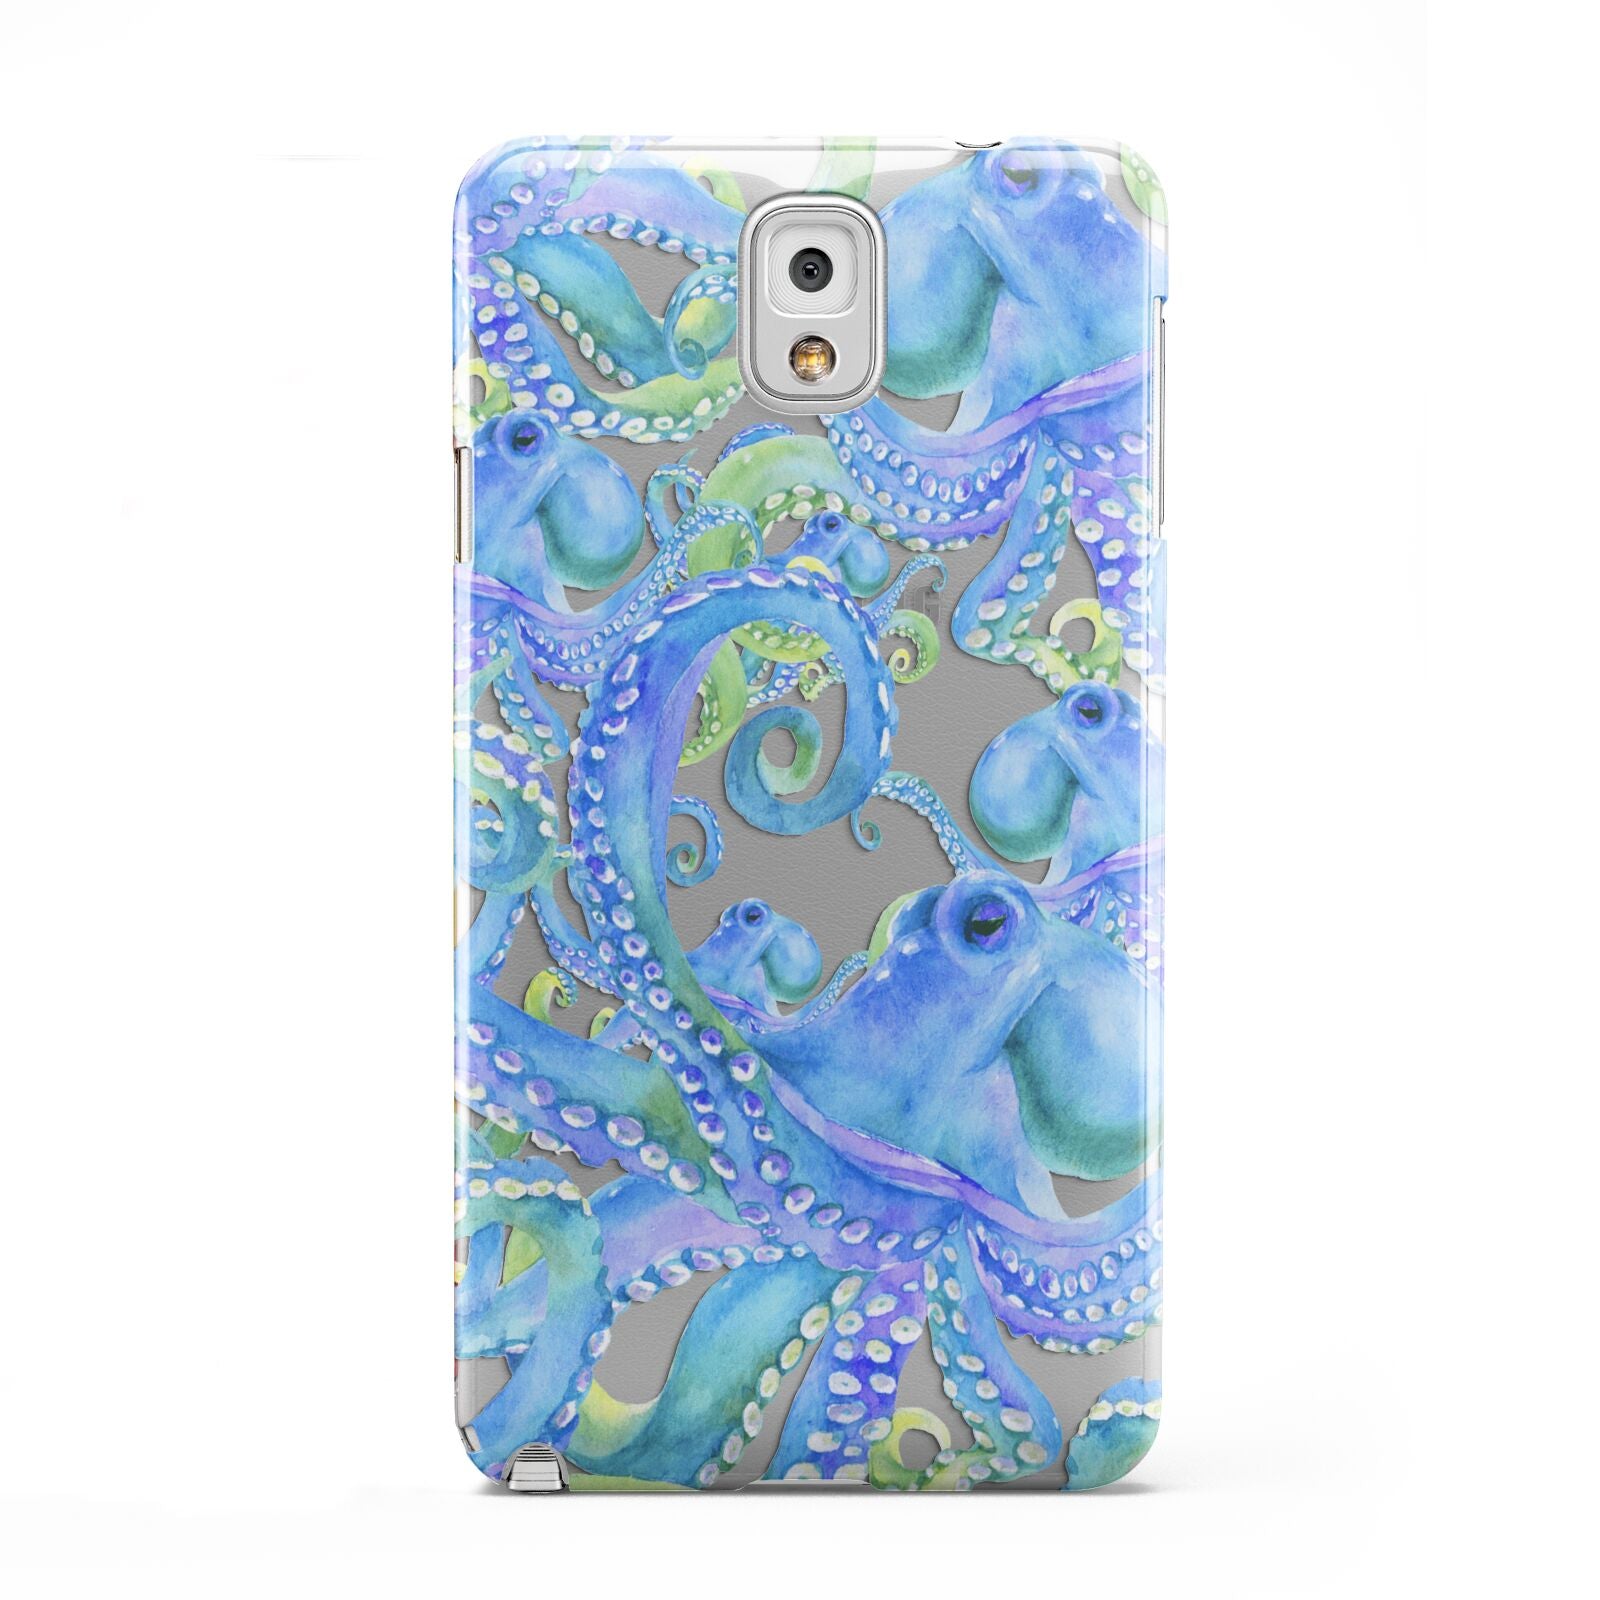 Octopus Samsung Galaxy Note 3 Case